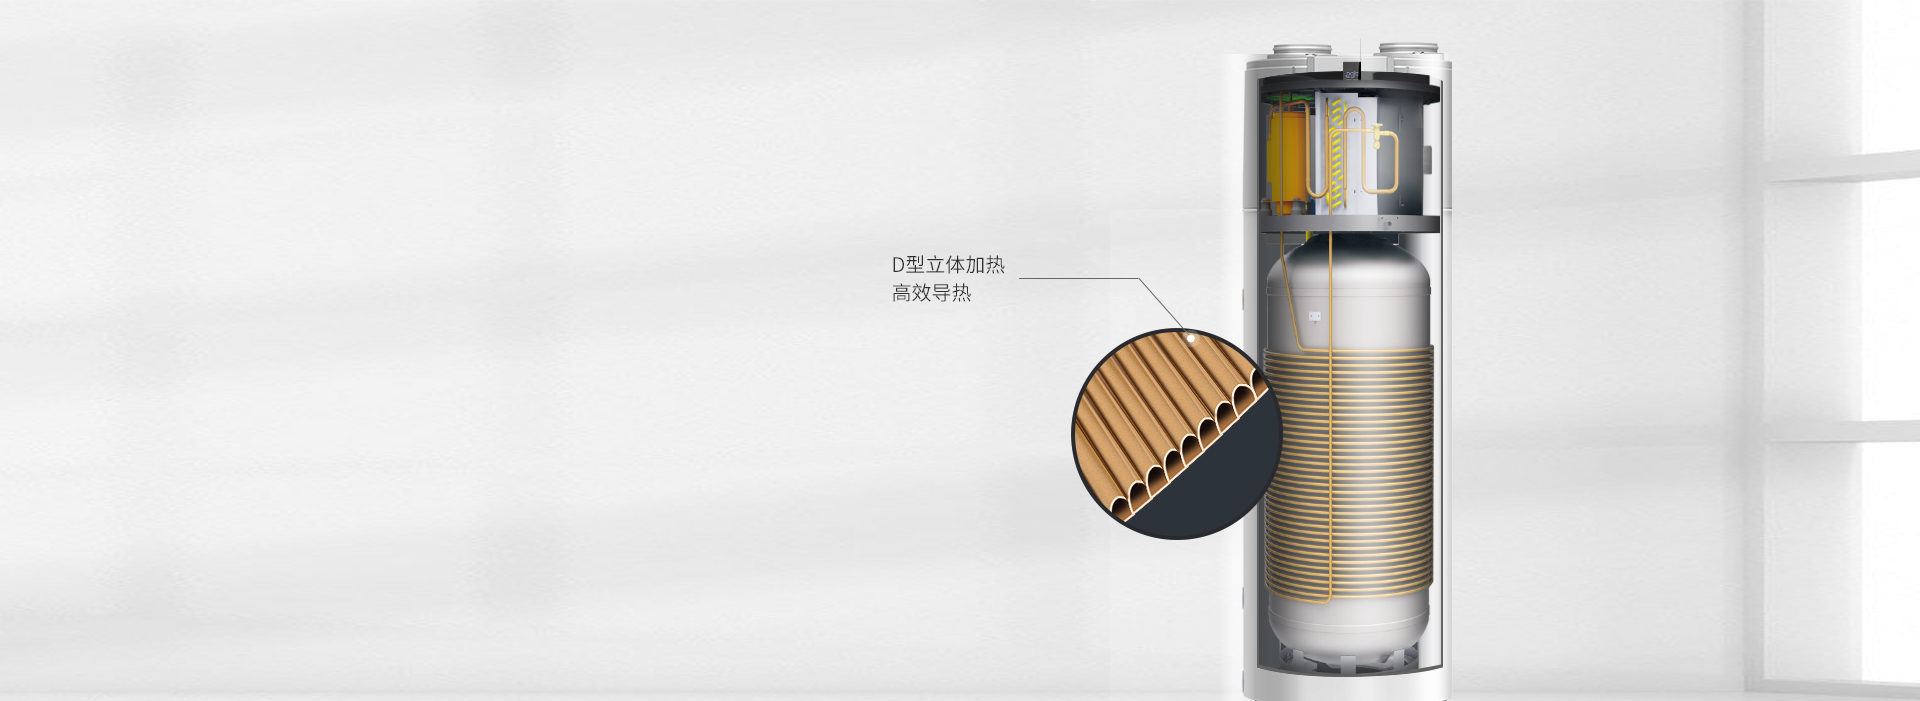 芬尼空气能热水器新尊贵型 200L外绕加热盘管